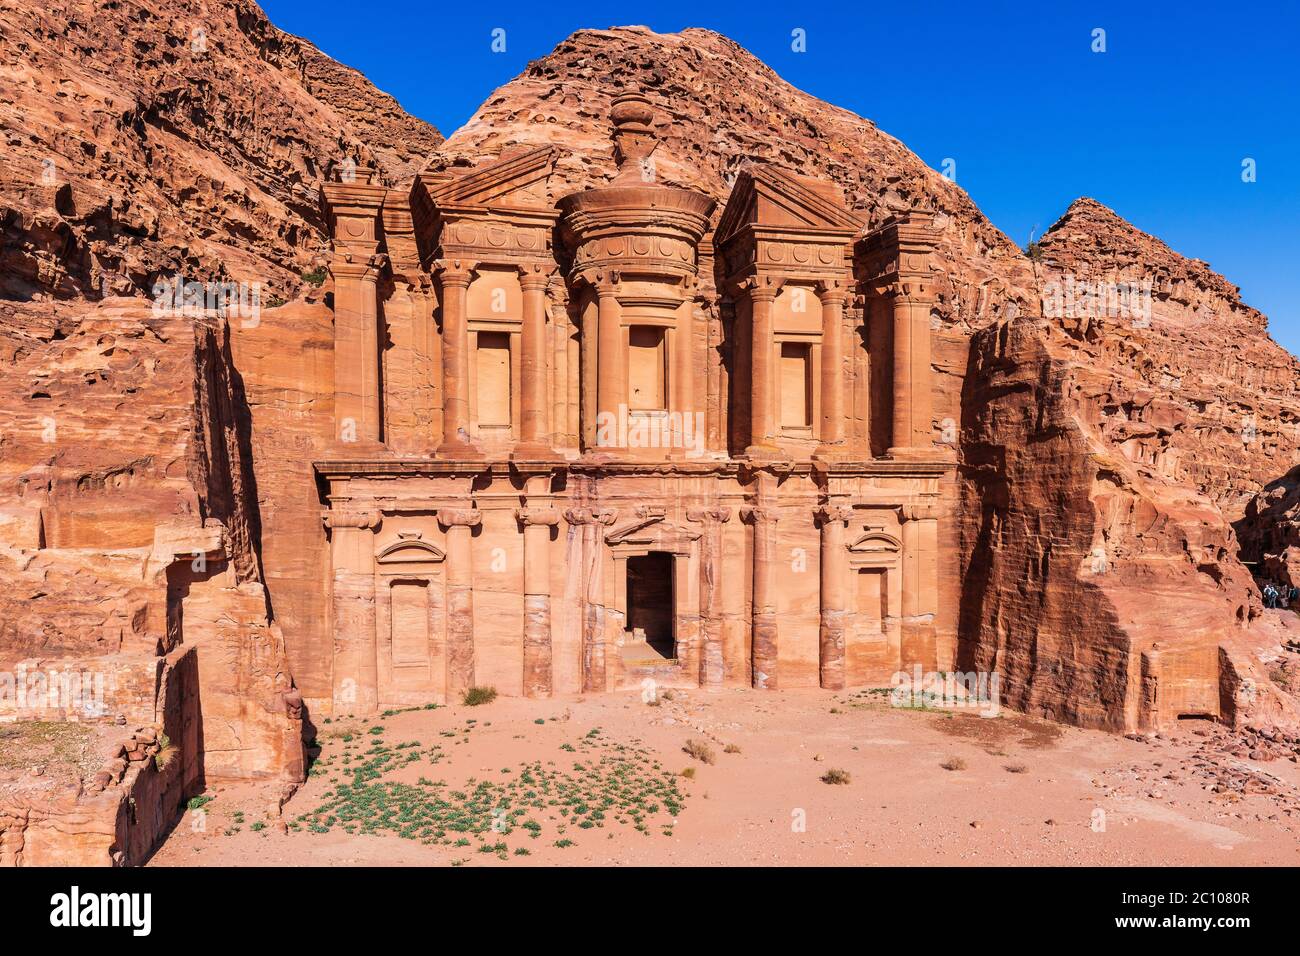 Petra, Giordania. El Deir (il Monastero) a Petra, la capitale dell'antico regno Nabateo. Foto Stock